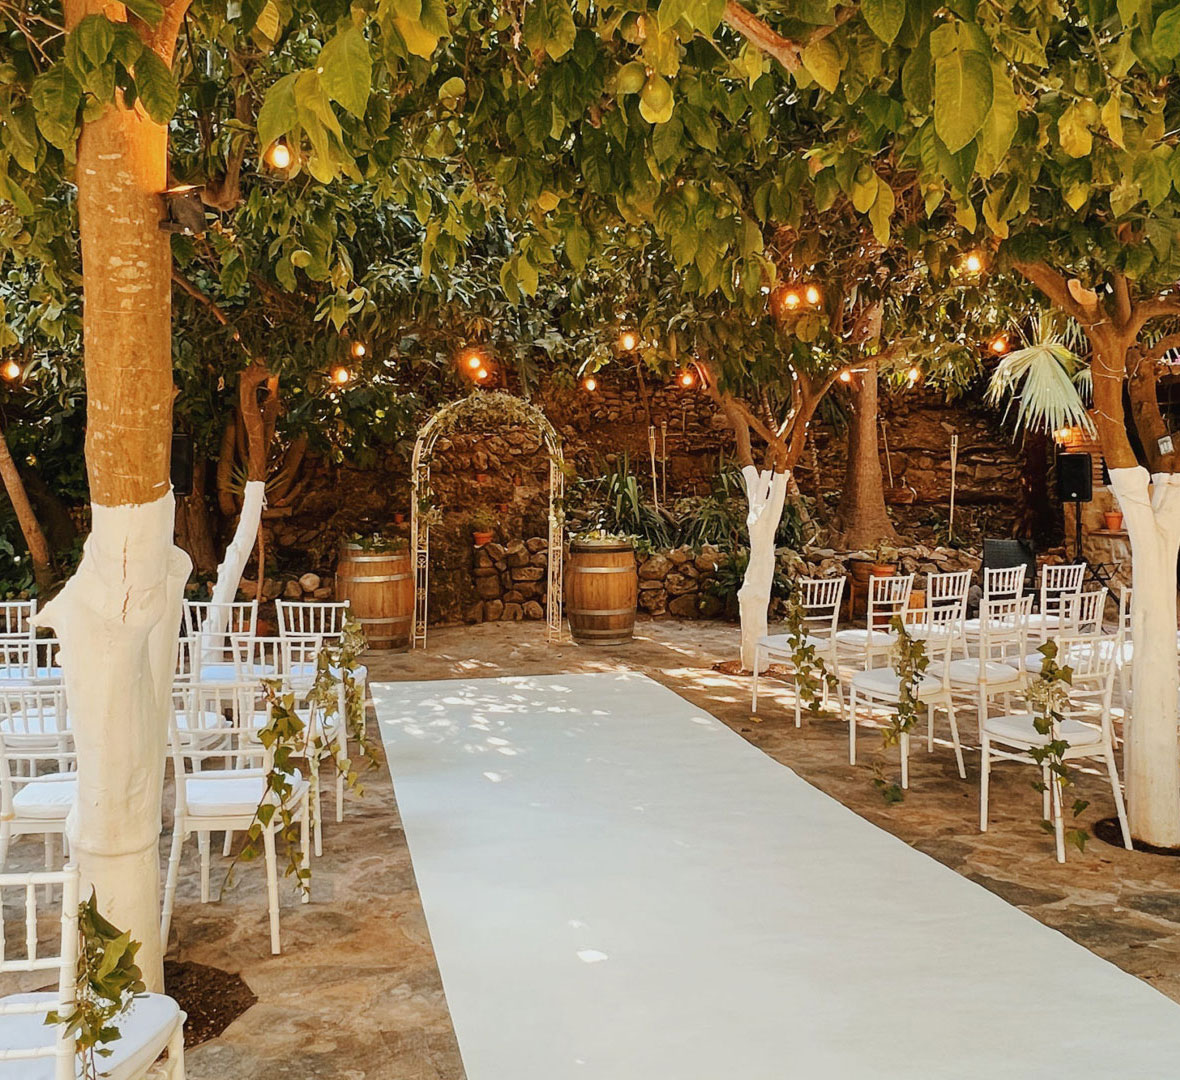 Your dream wedding venue in Marbella